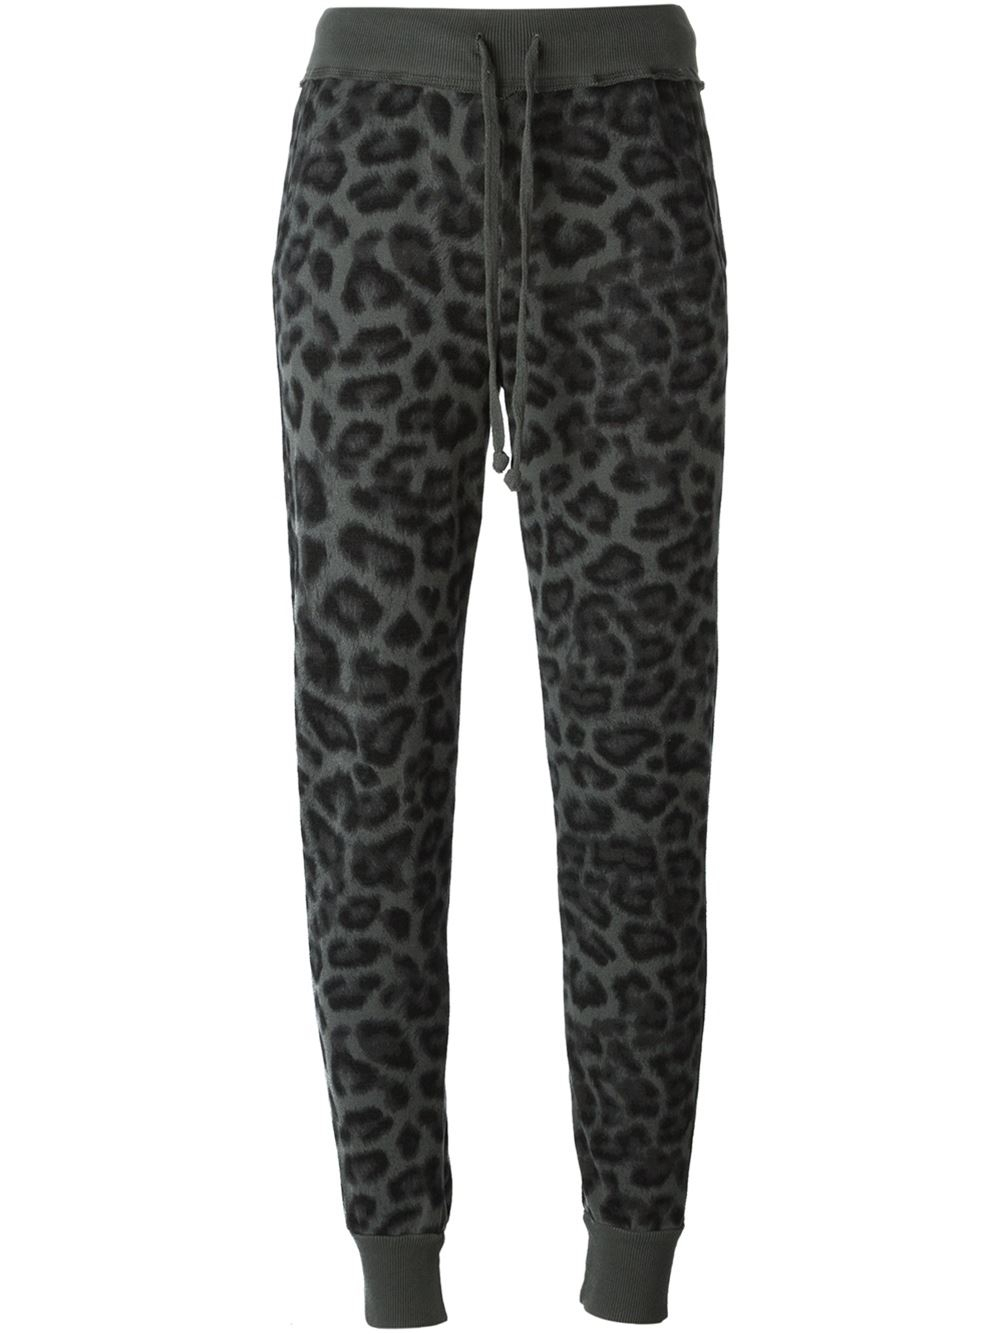 Lyst - Splendid Leopard-Print Cotton Sweatpants in Gray